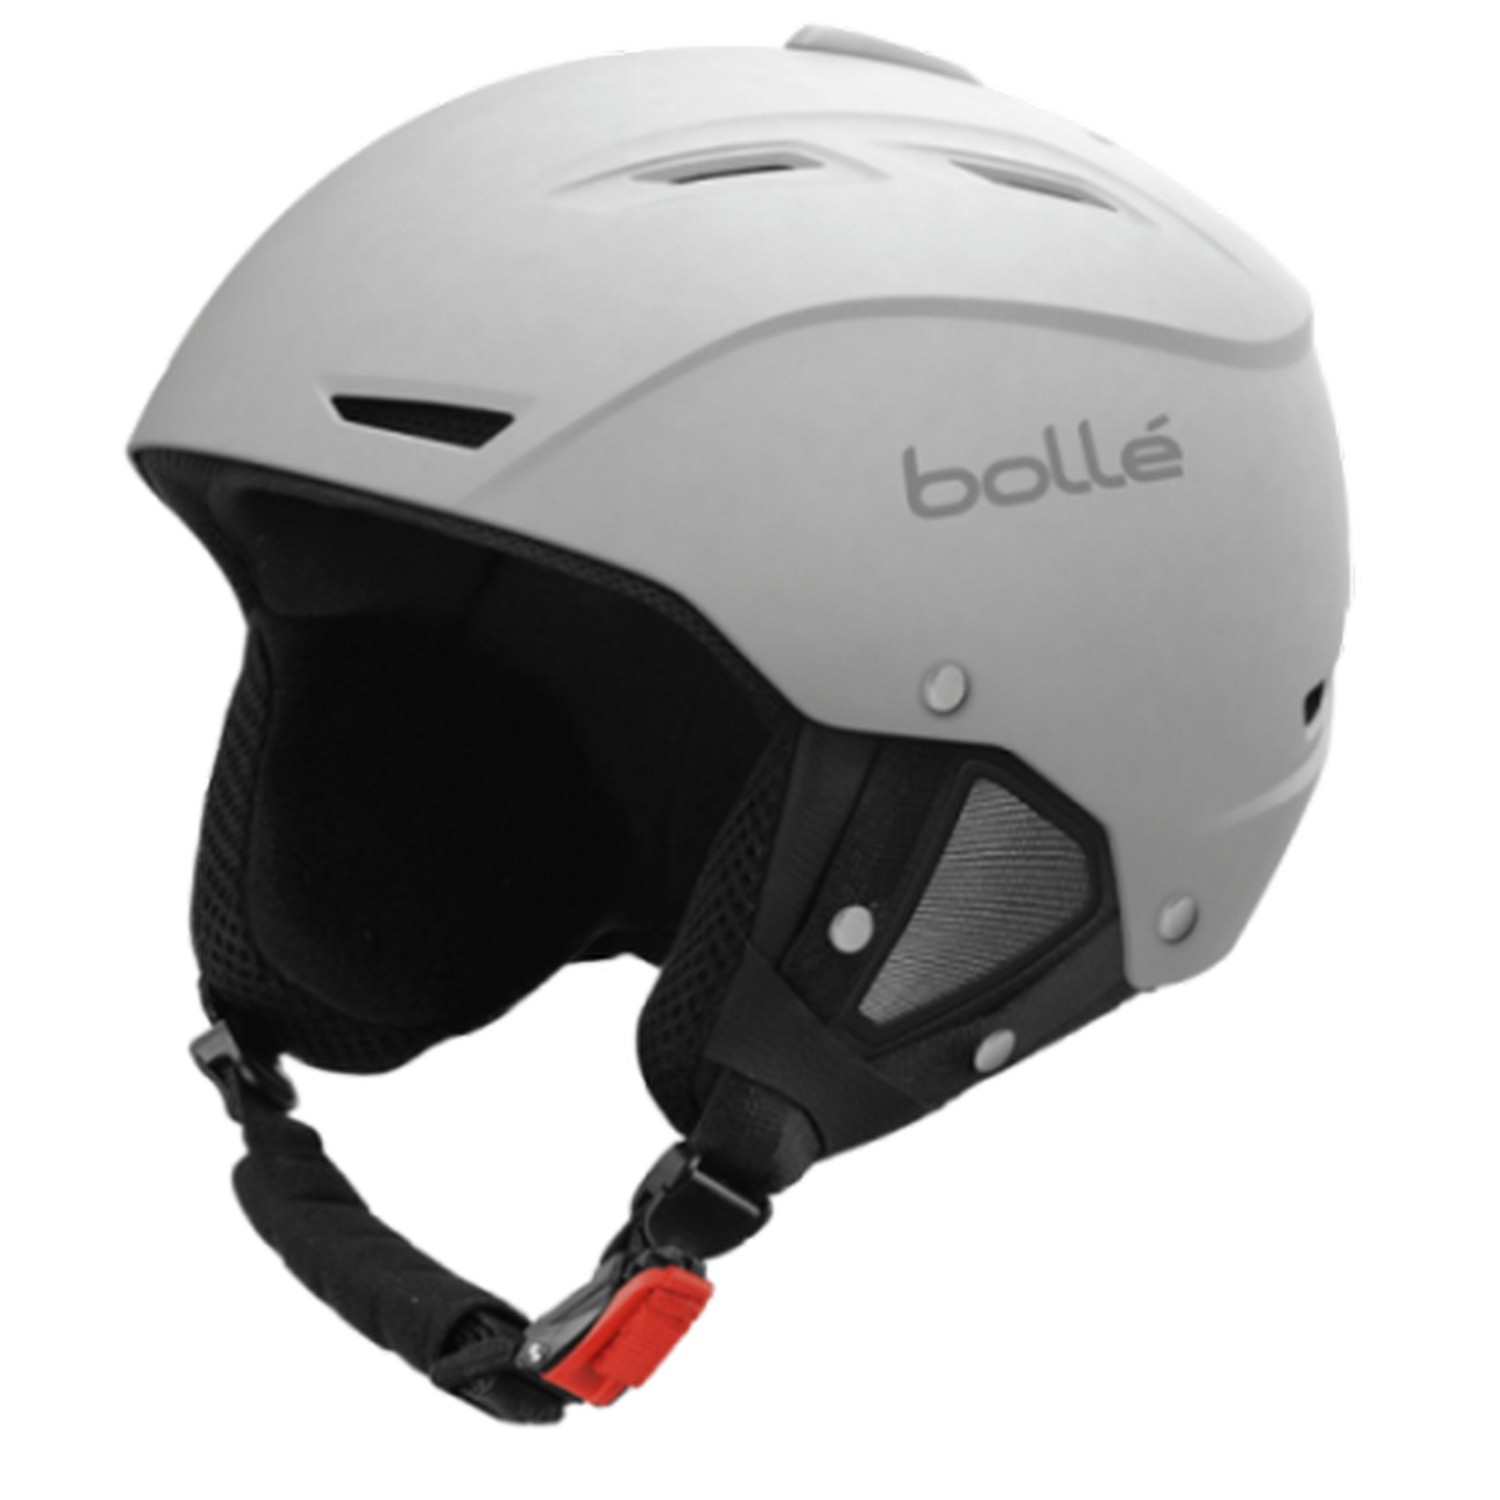 Защитный шлем для взрослых Bolle Backline SOFT White в Киеве